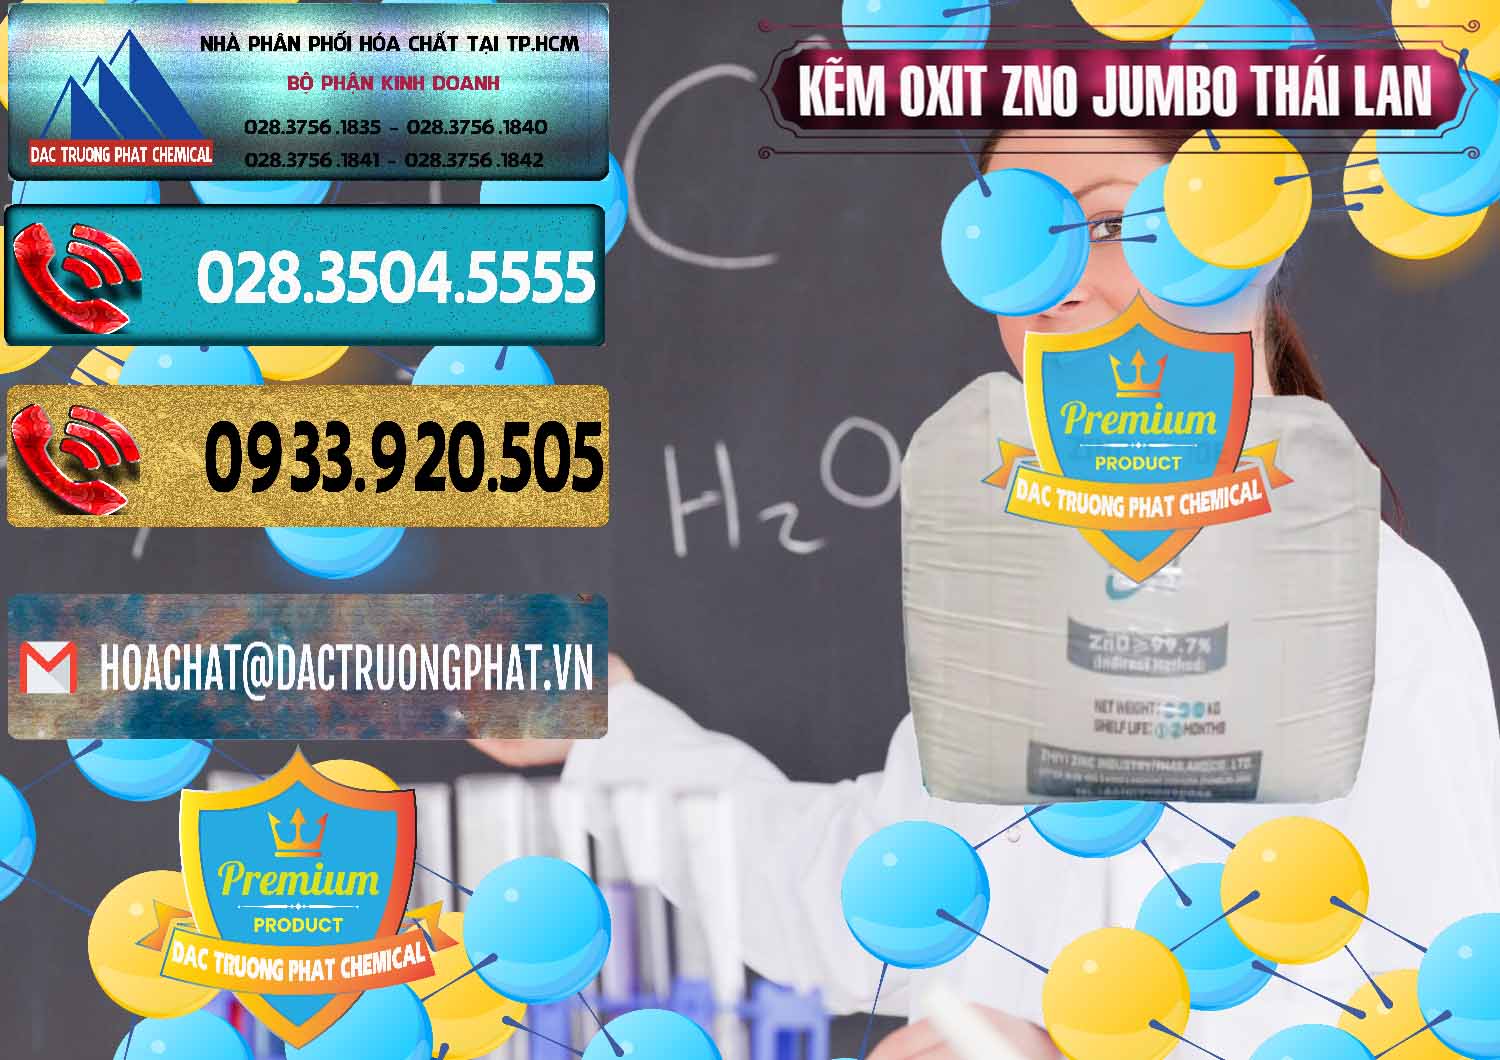 Cty bán _ cung cấp Zinc Oxide - Bột Kẽm Oxit ZNO Jumbo Bành Thái Lan Thailand - 0370 - Chuyên nhập khẩu và cung cấp hóa chất tại TP.HCM - hoachatdetnhuom.com